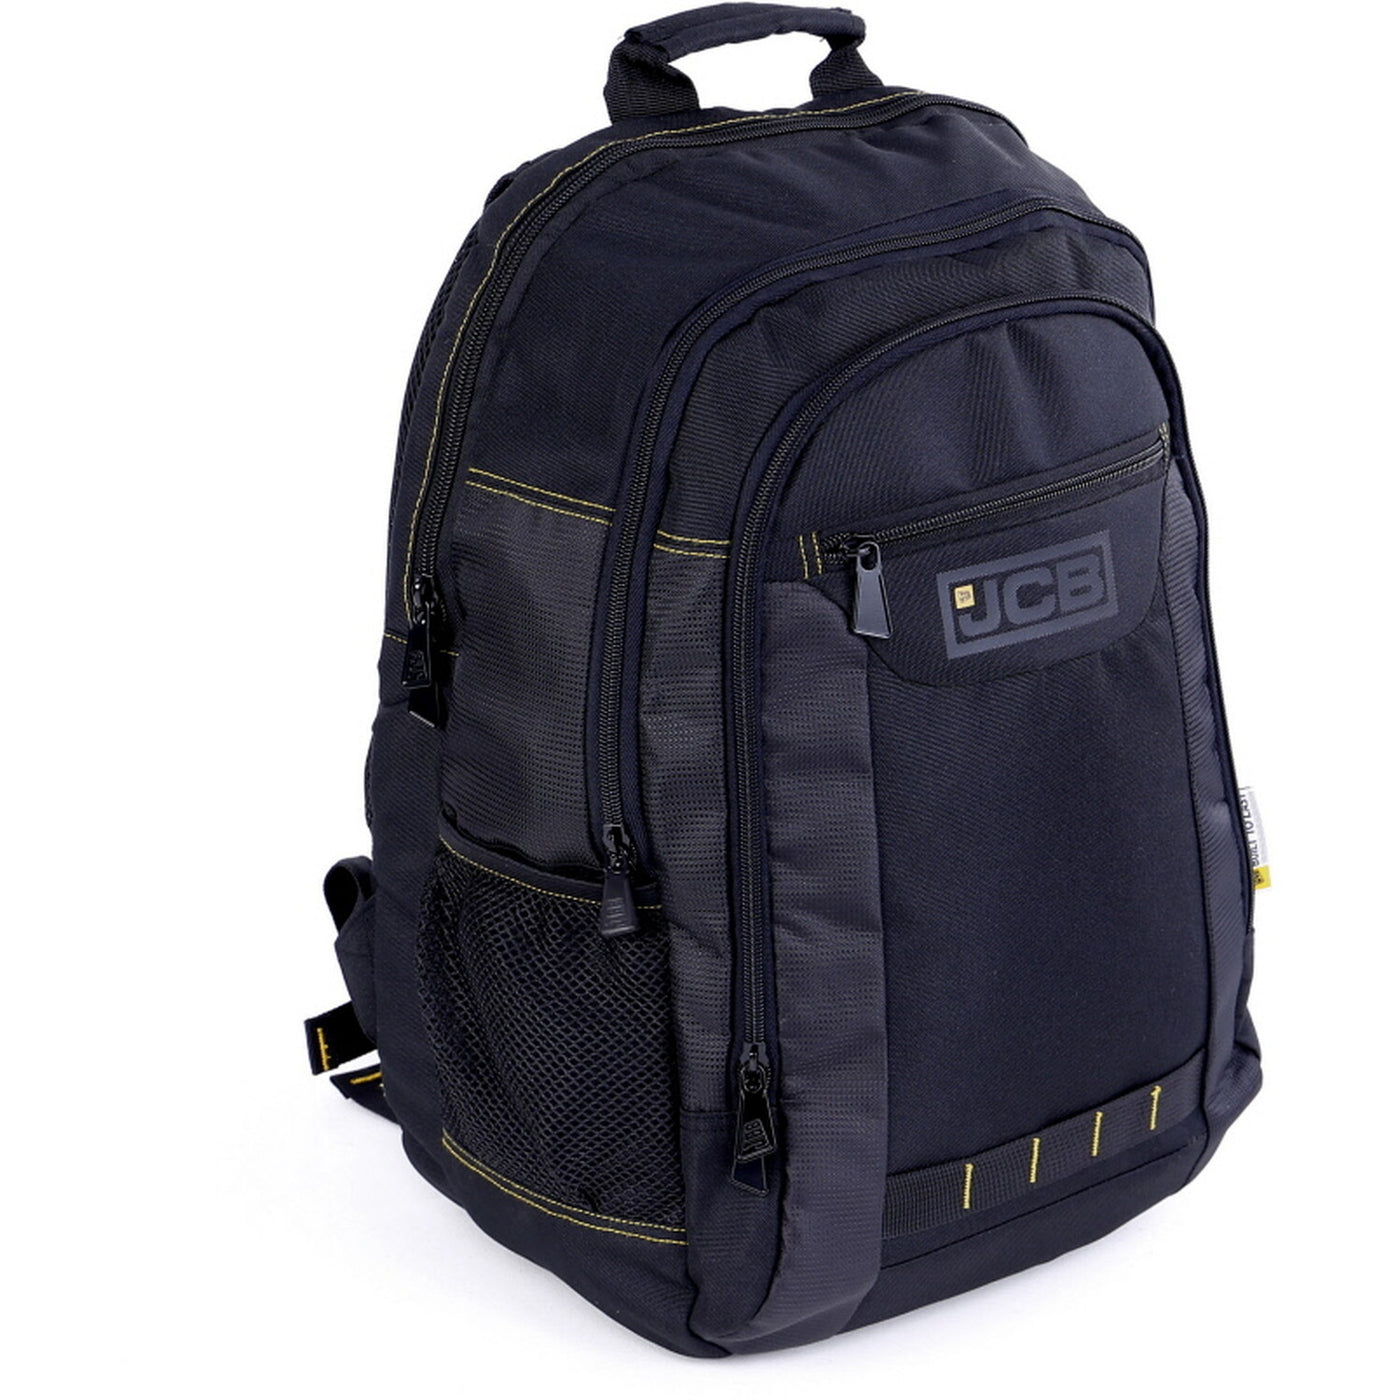 JCB Multi-Pocket Organiser Backpack, Black